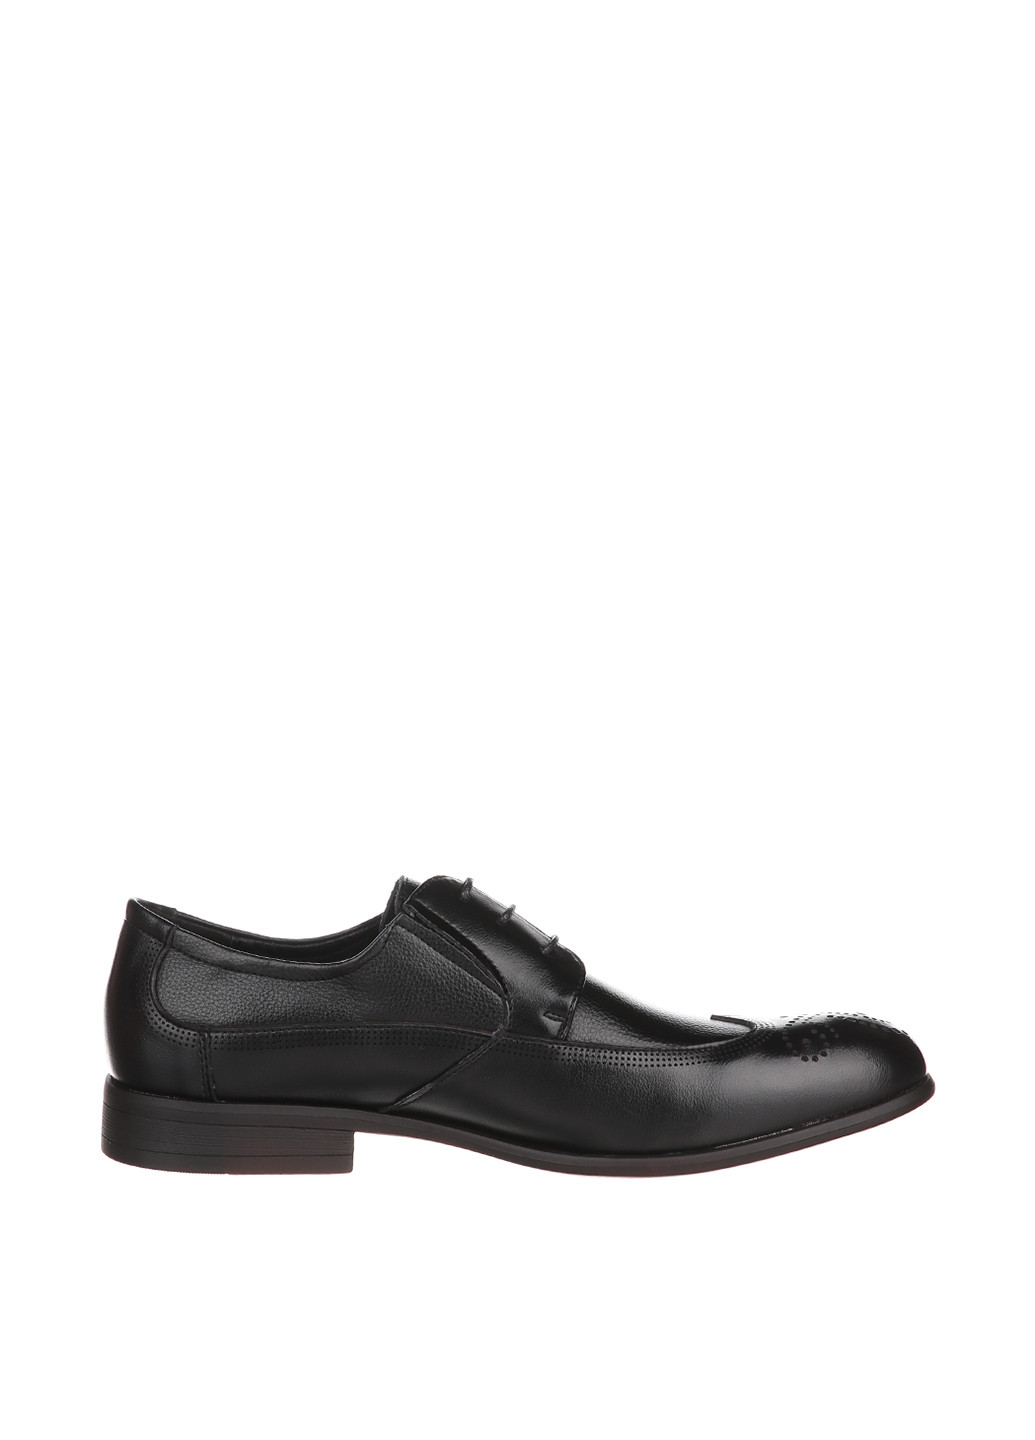 Черные классические туфли Yalasou на шнурках